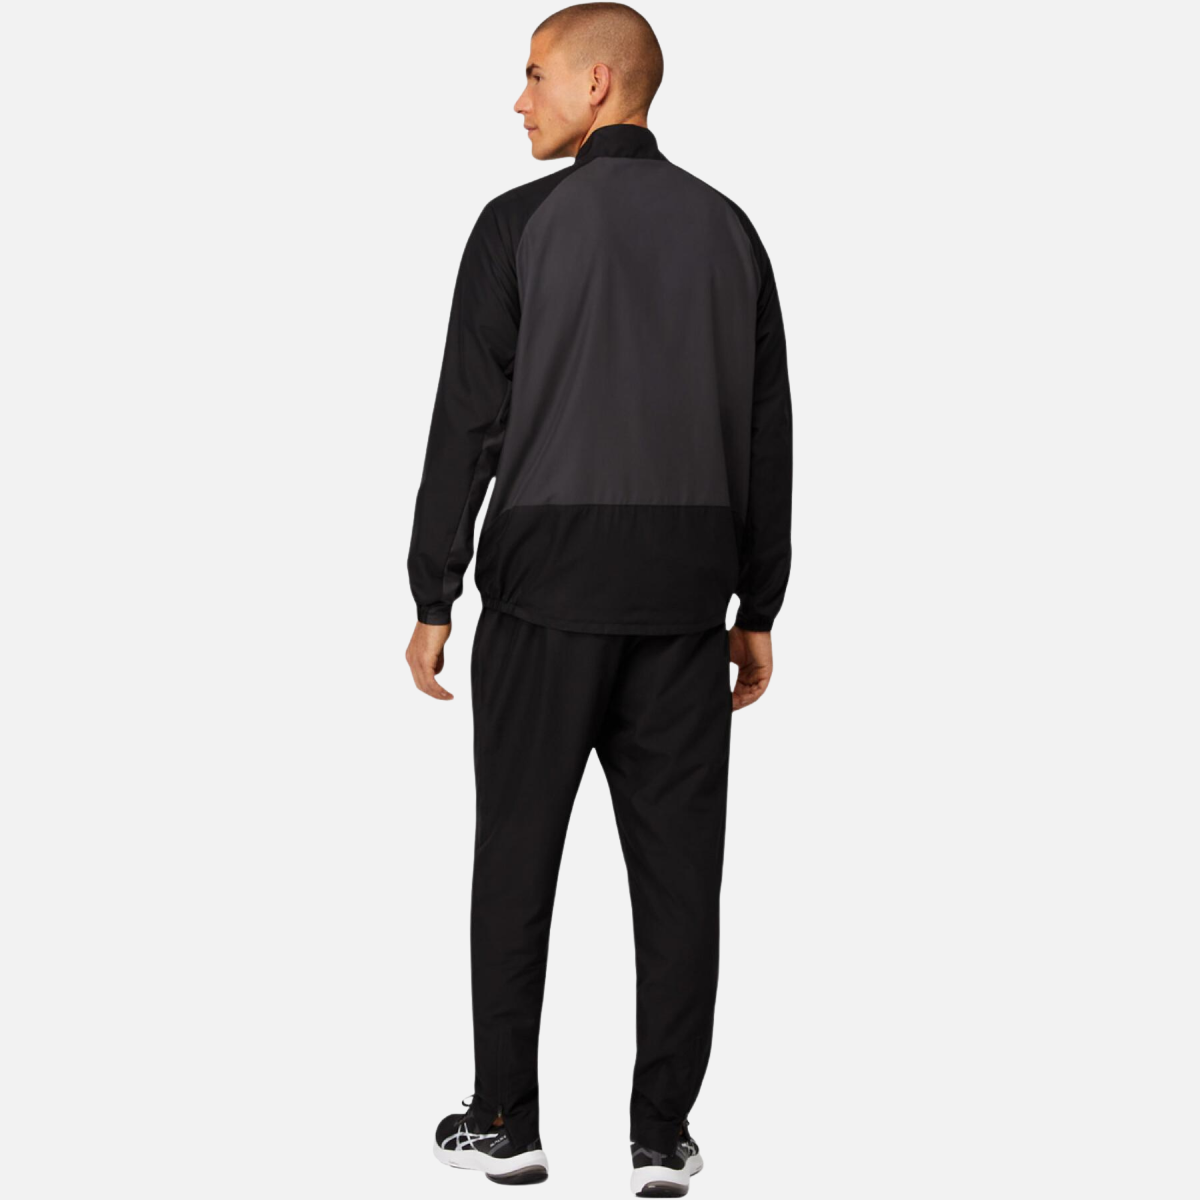 Asics Match Suit Tracksuit - Black/Grey